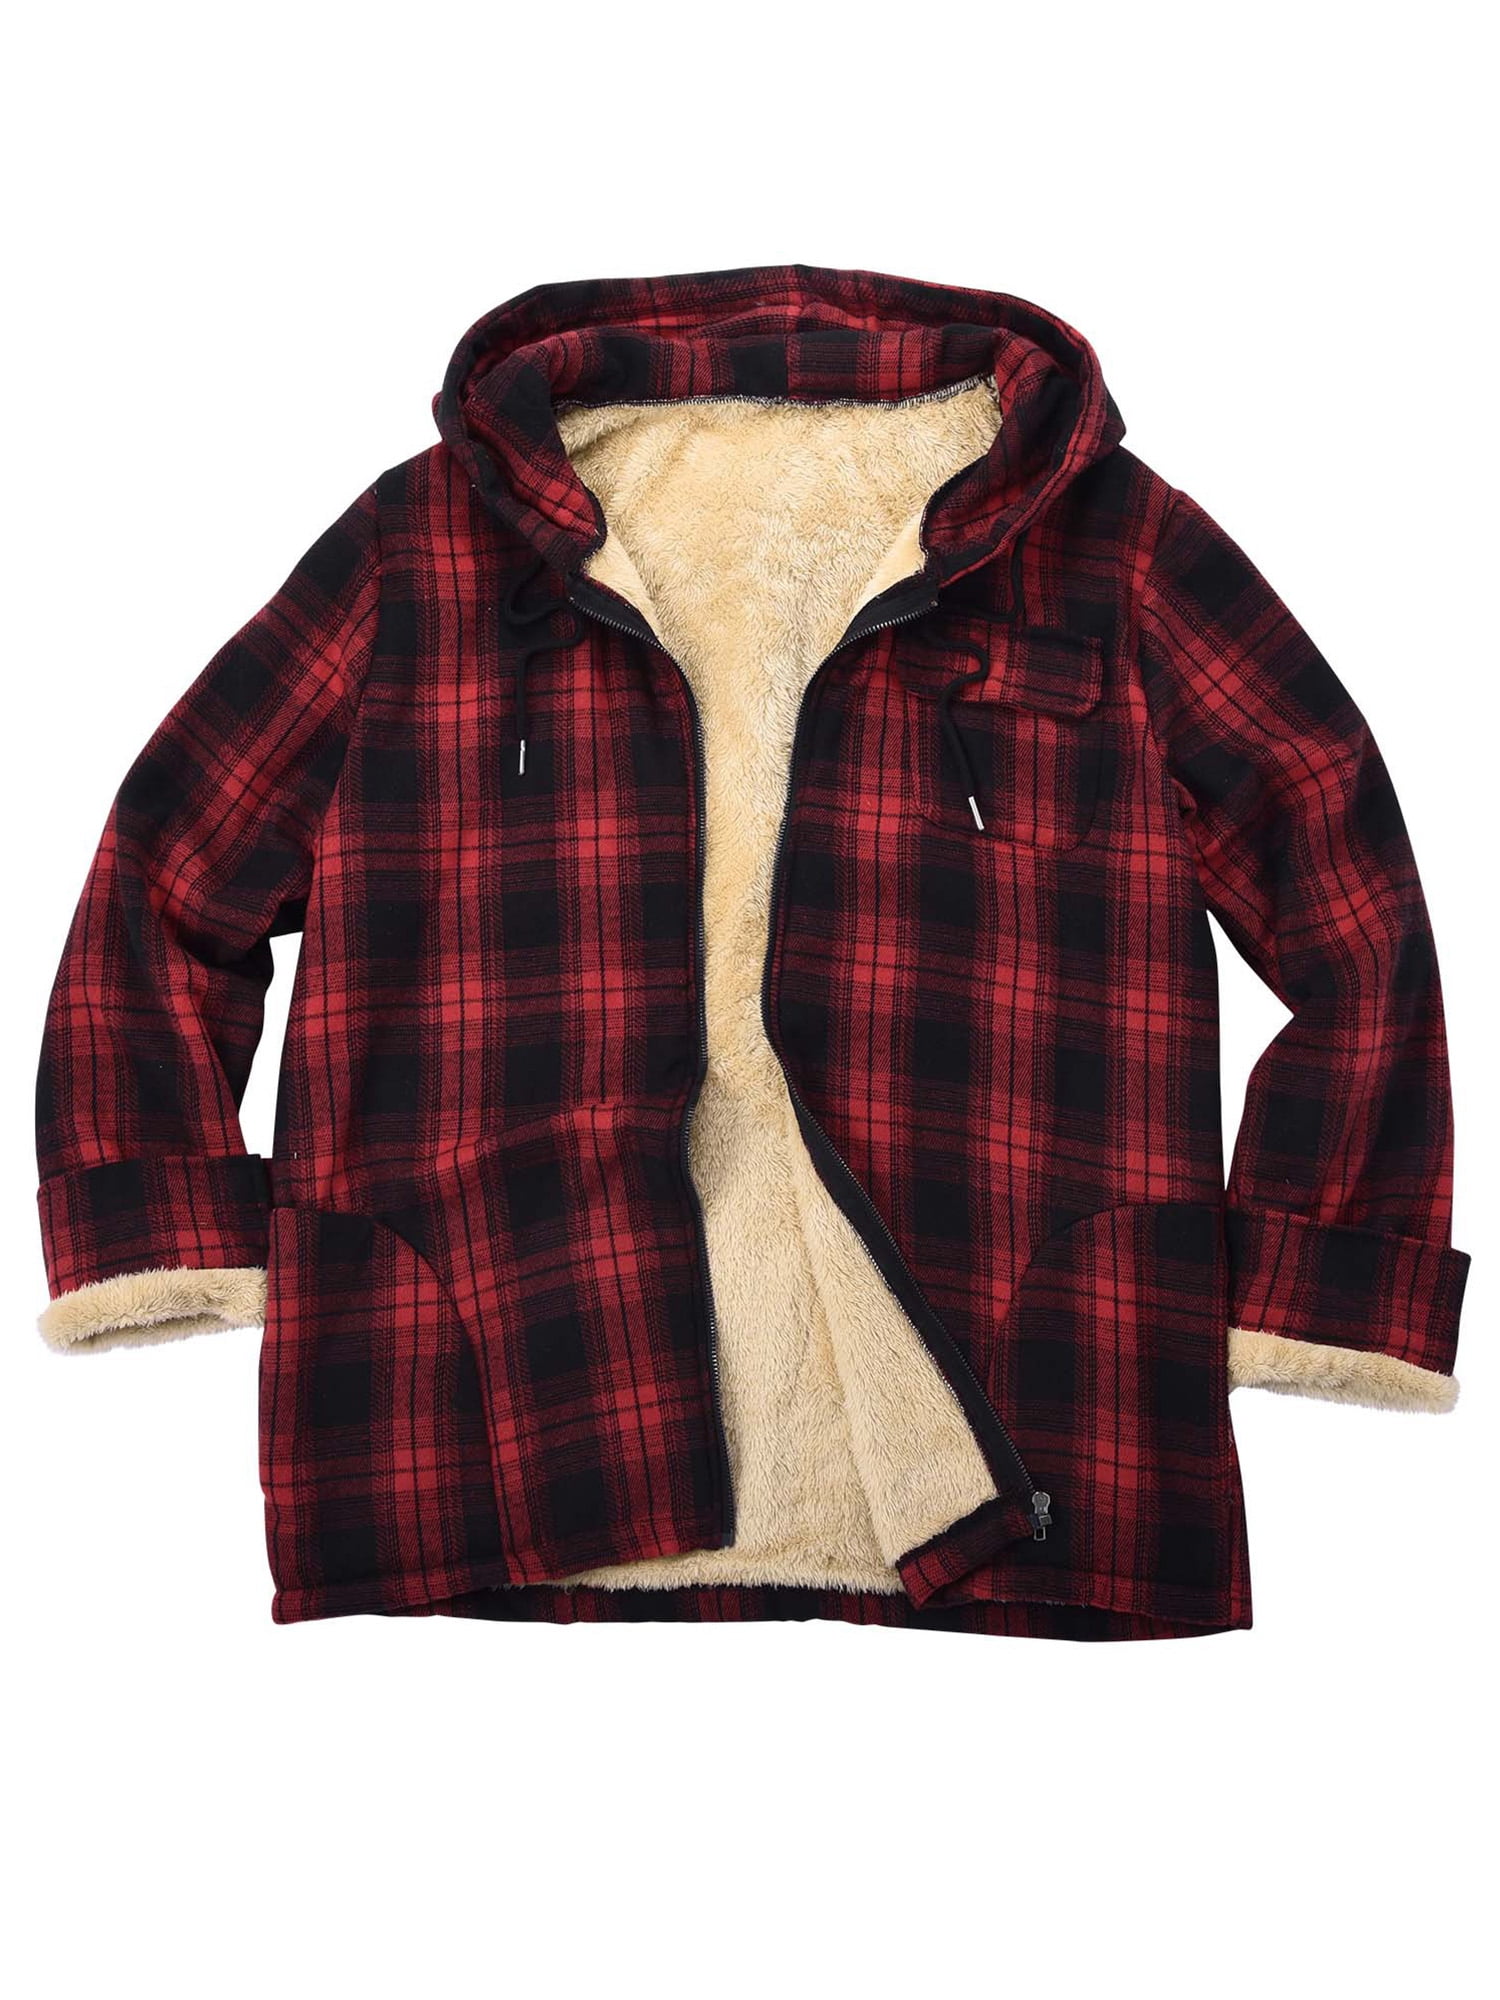 UKAP Men's Coat Sherpa Lined Jackets Hooded Hoodies Work Outwear Warm ...